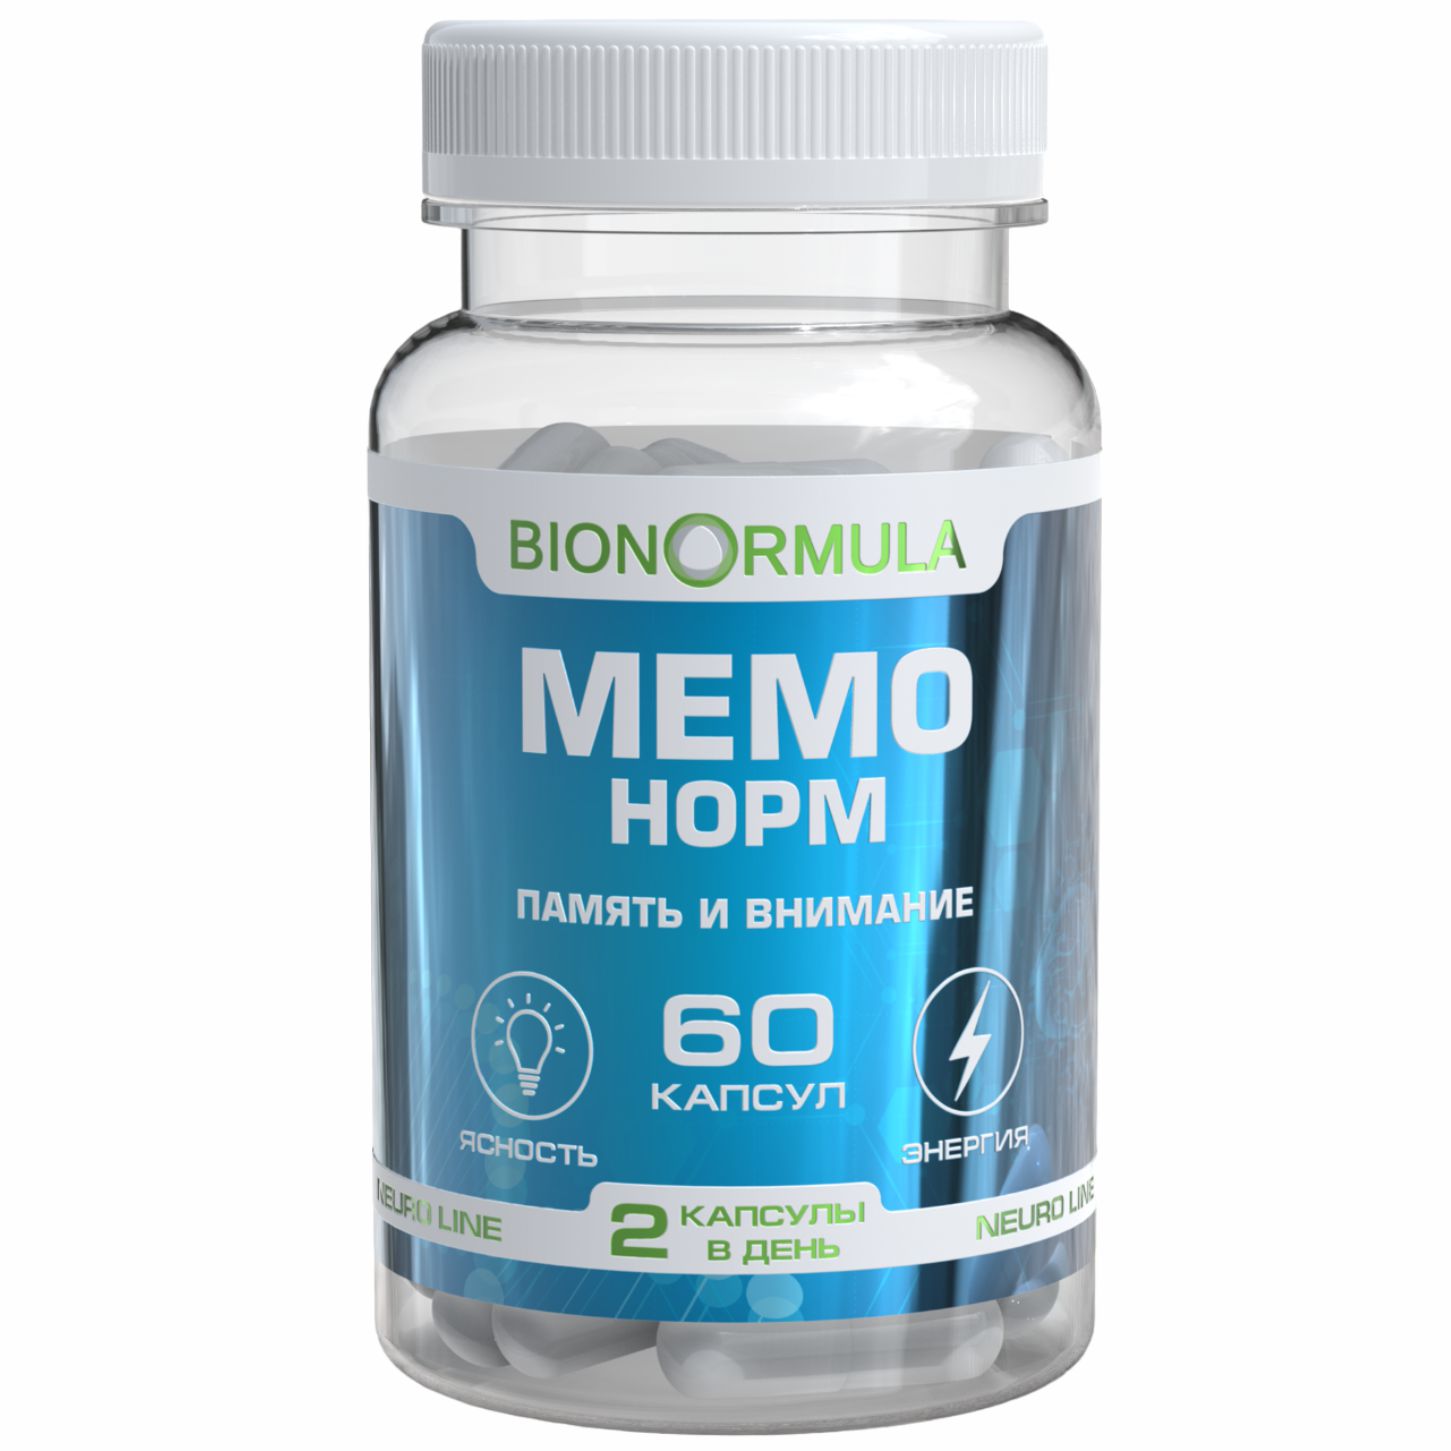 Мемо норм для мозга, Витаминный комплекс Bionormula мемо норм для мозга памяти внимания капсулы 60 шт.  - купить